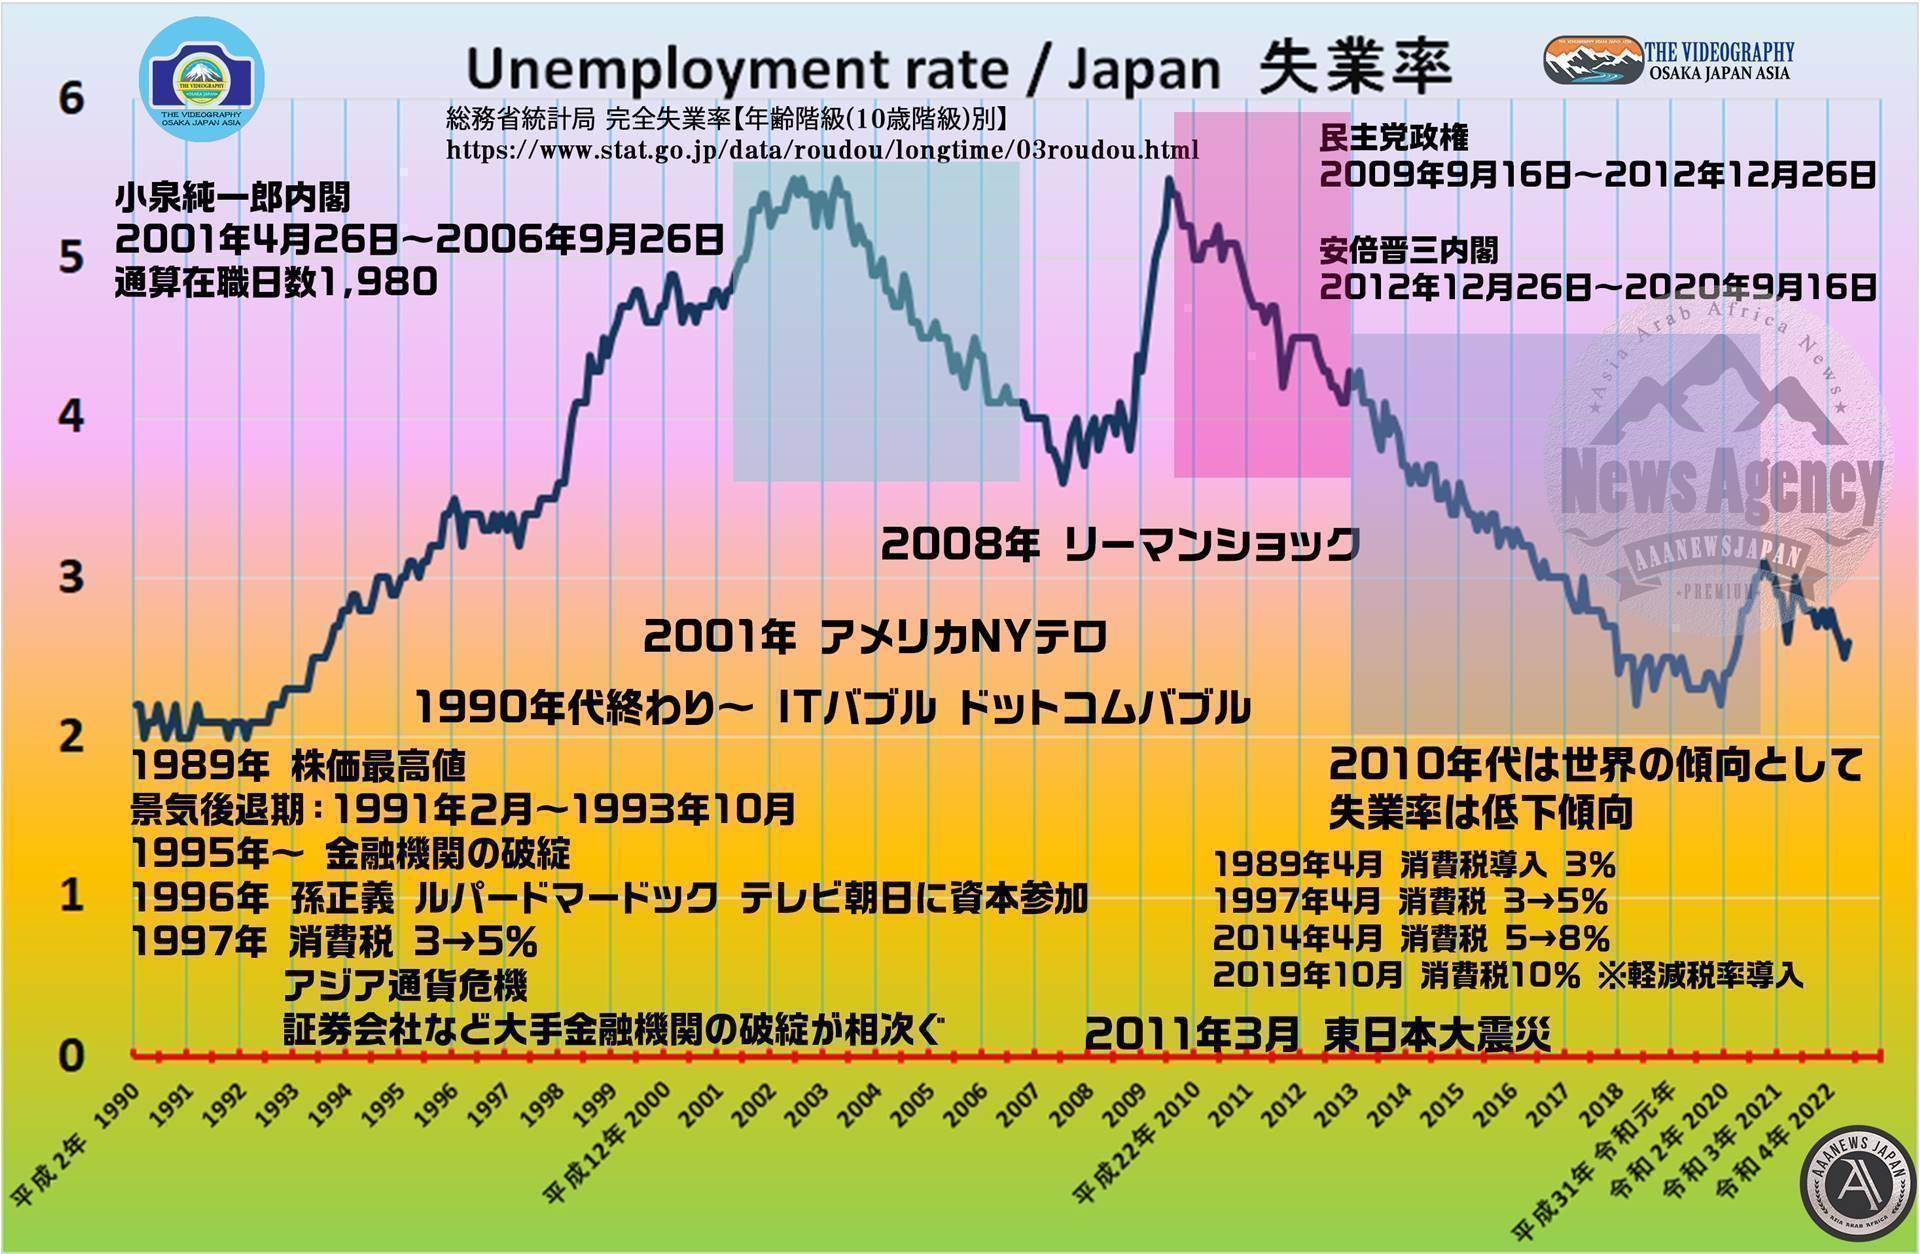 失業率 2.2%まで低下。完全雇用達成。2018年以降、失業率下限に達成したと想定される